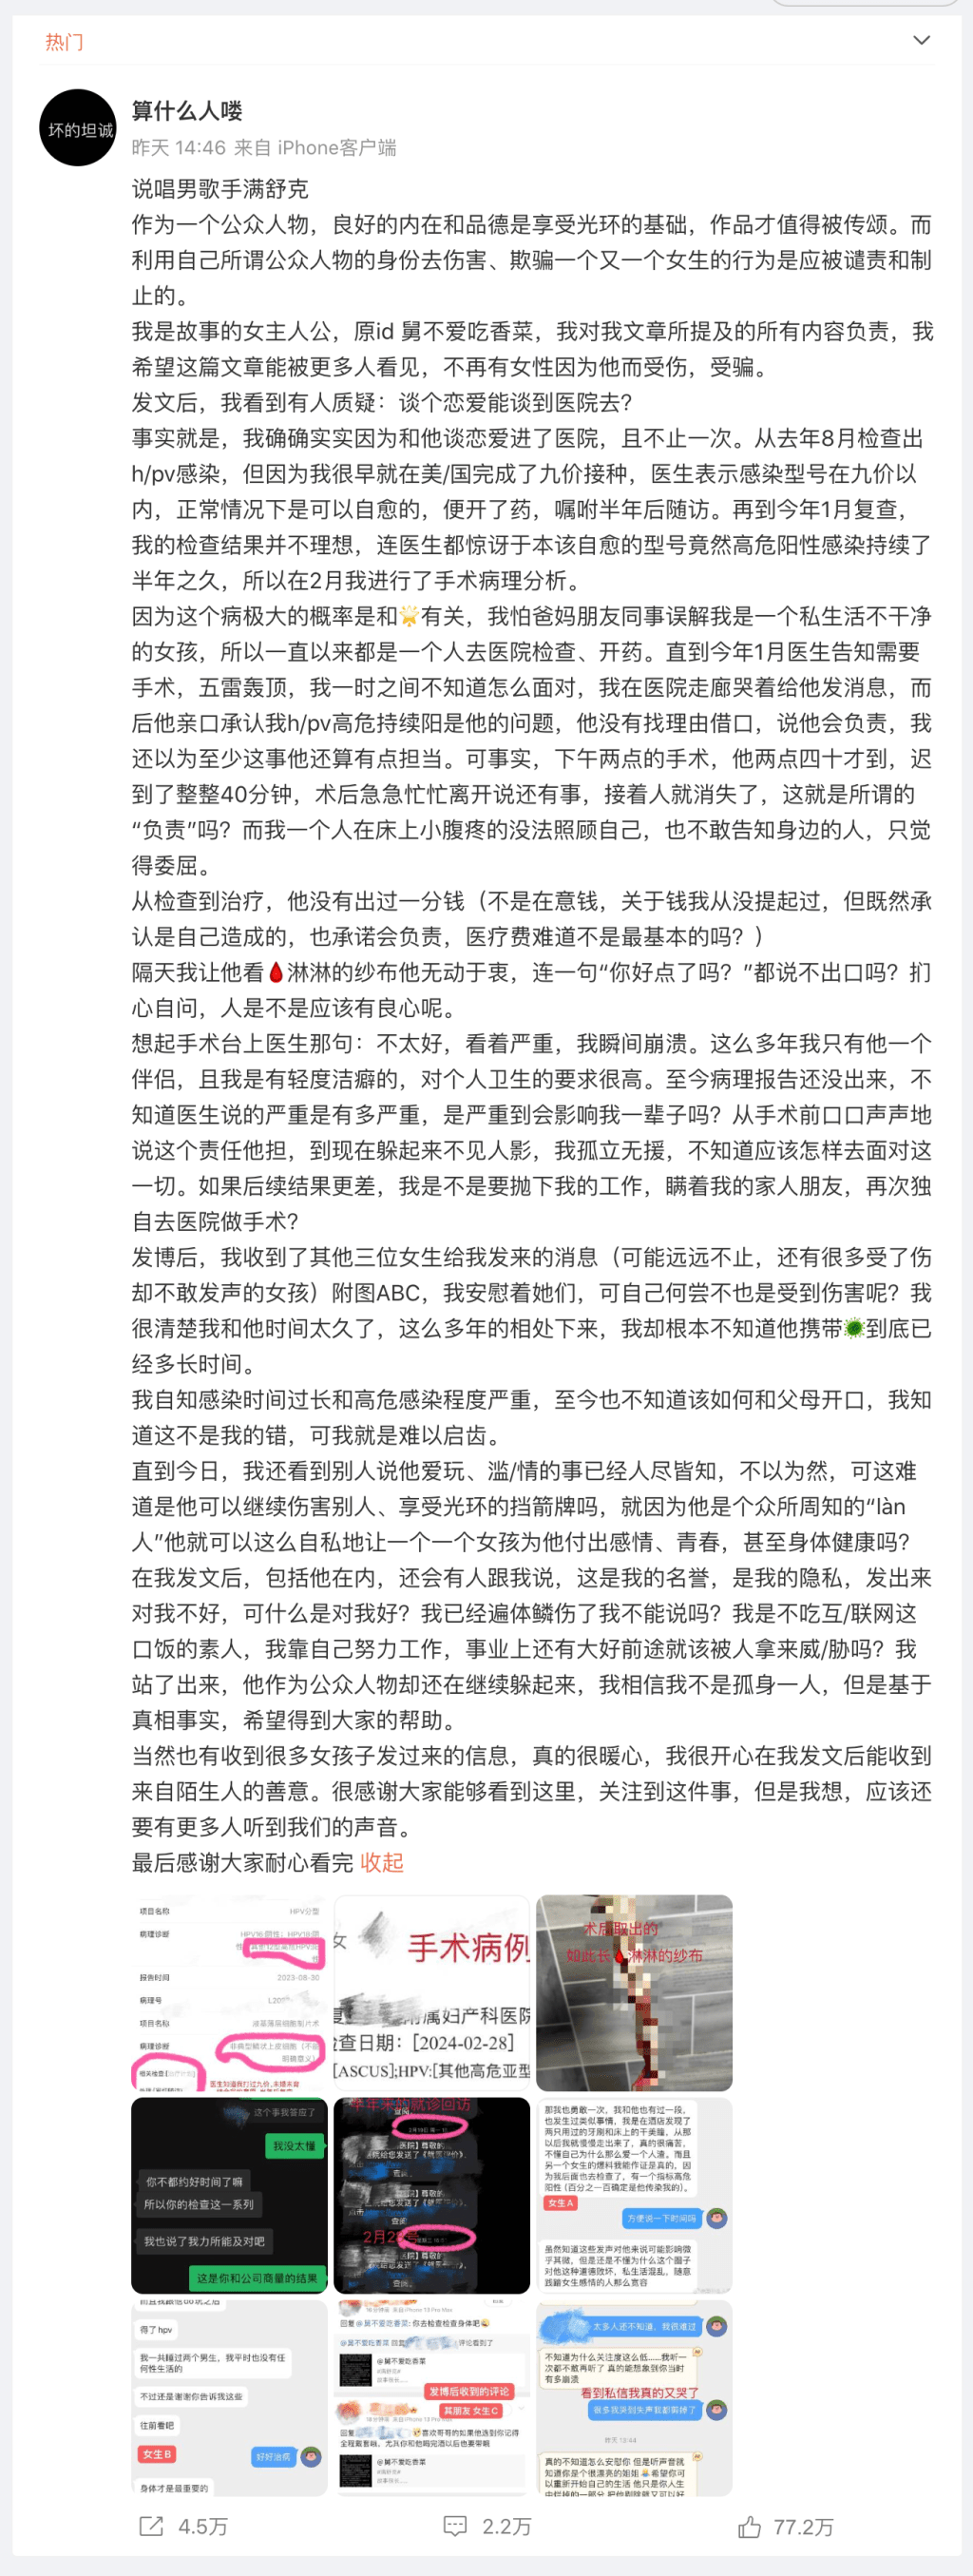 自稱滿舒克女友的網民在微博發長文爆料。